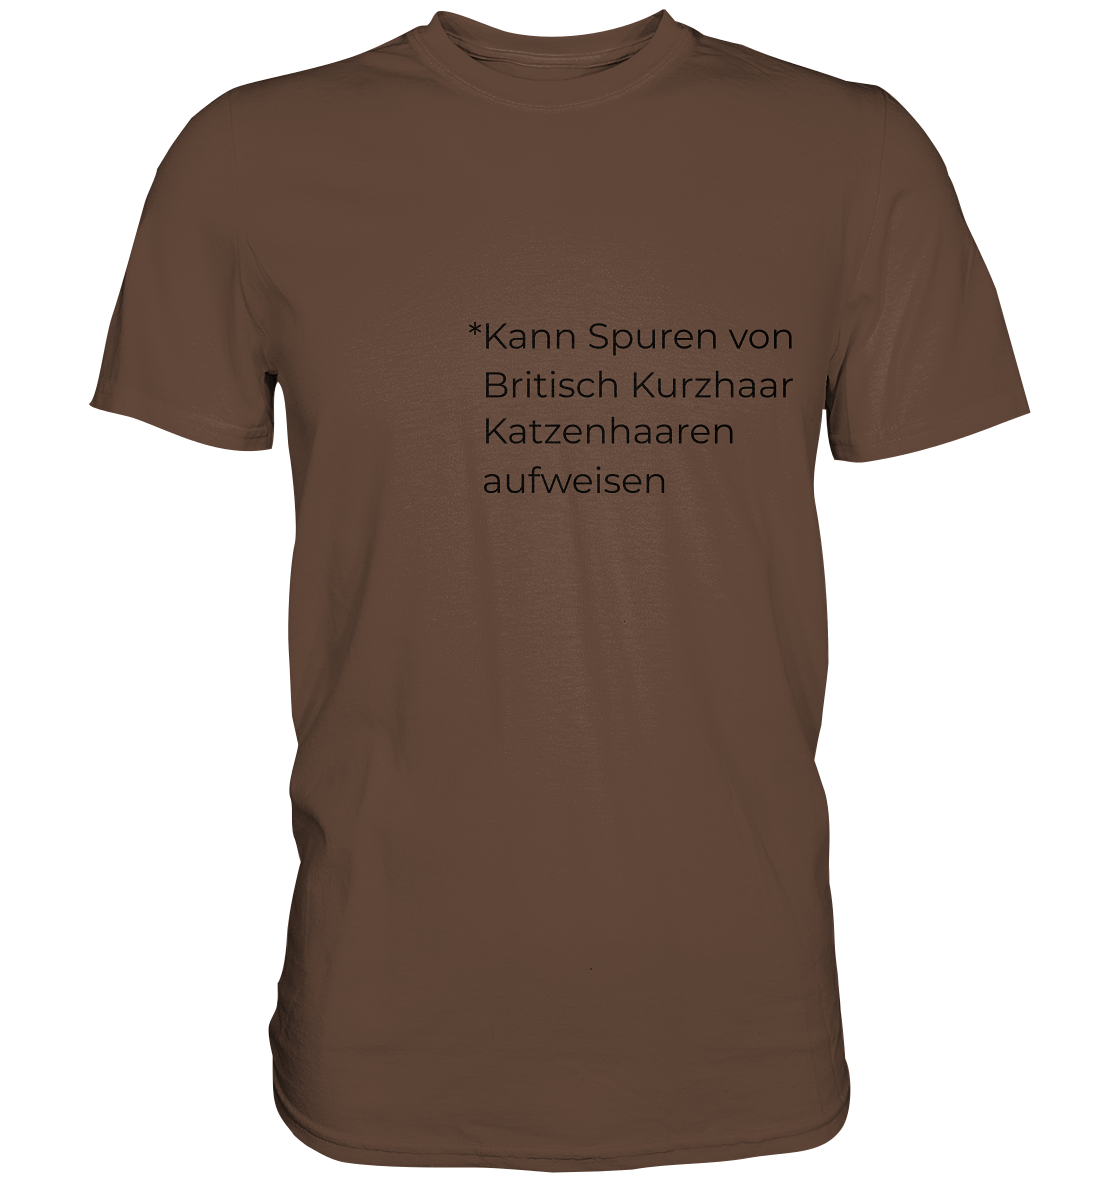 Kann Spuren von Britisch Kurzhaar Katzenhaaren aufweisen - Premium Shirt